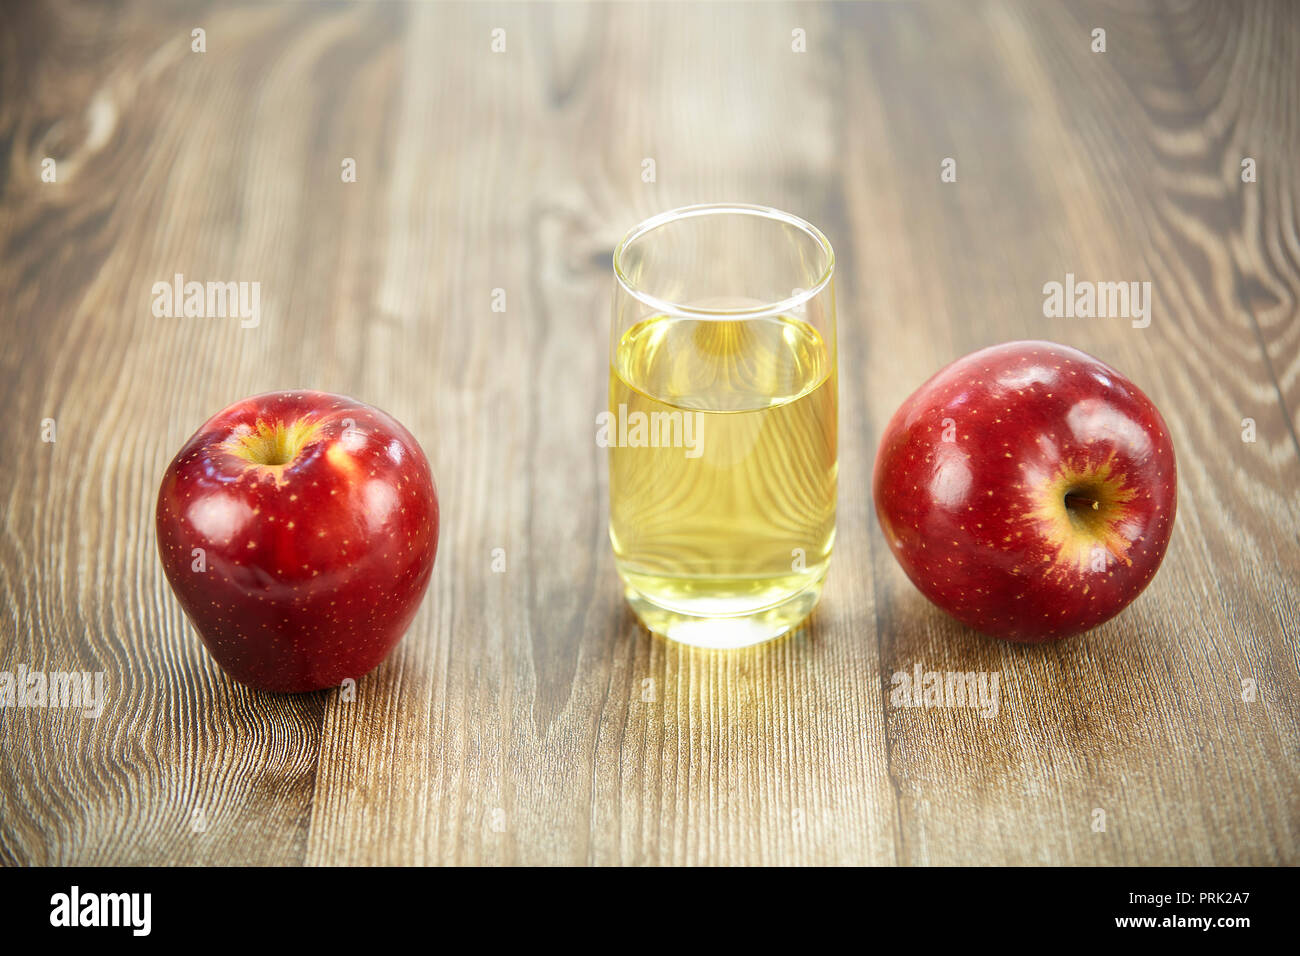 Zwei Äpfel und ein Glas Apfelsaft auf der Oberfläche des Holzes. Stockfoto